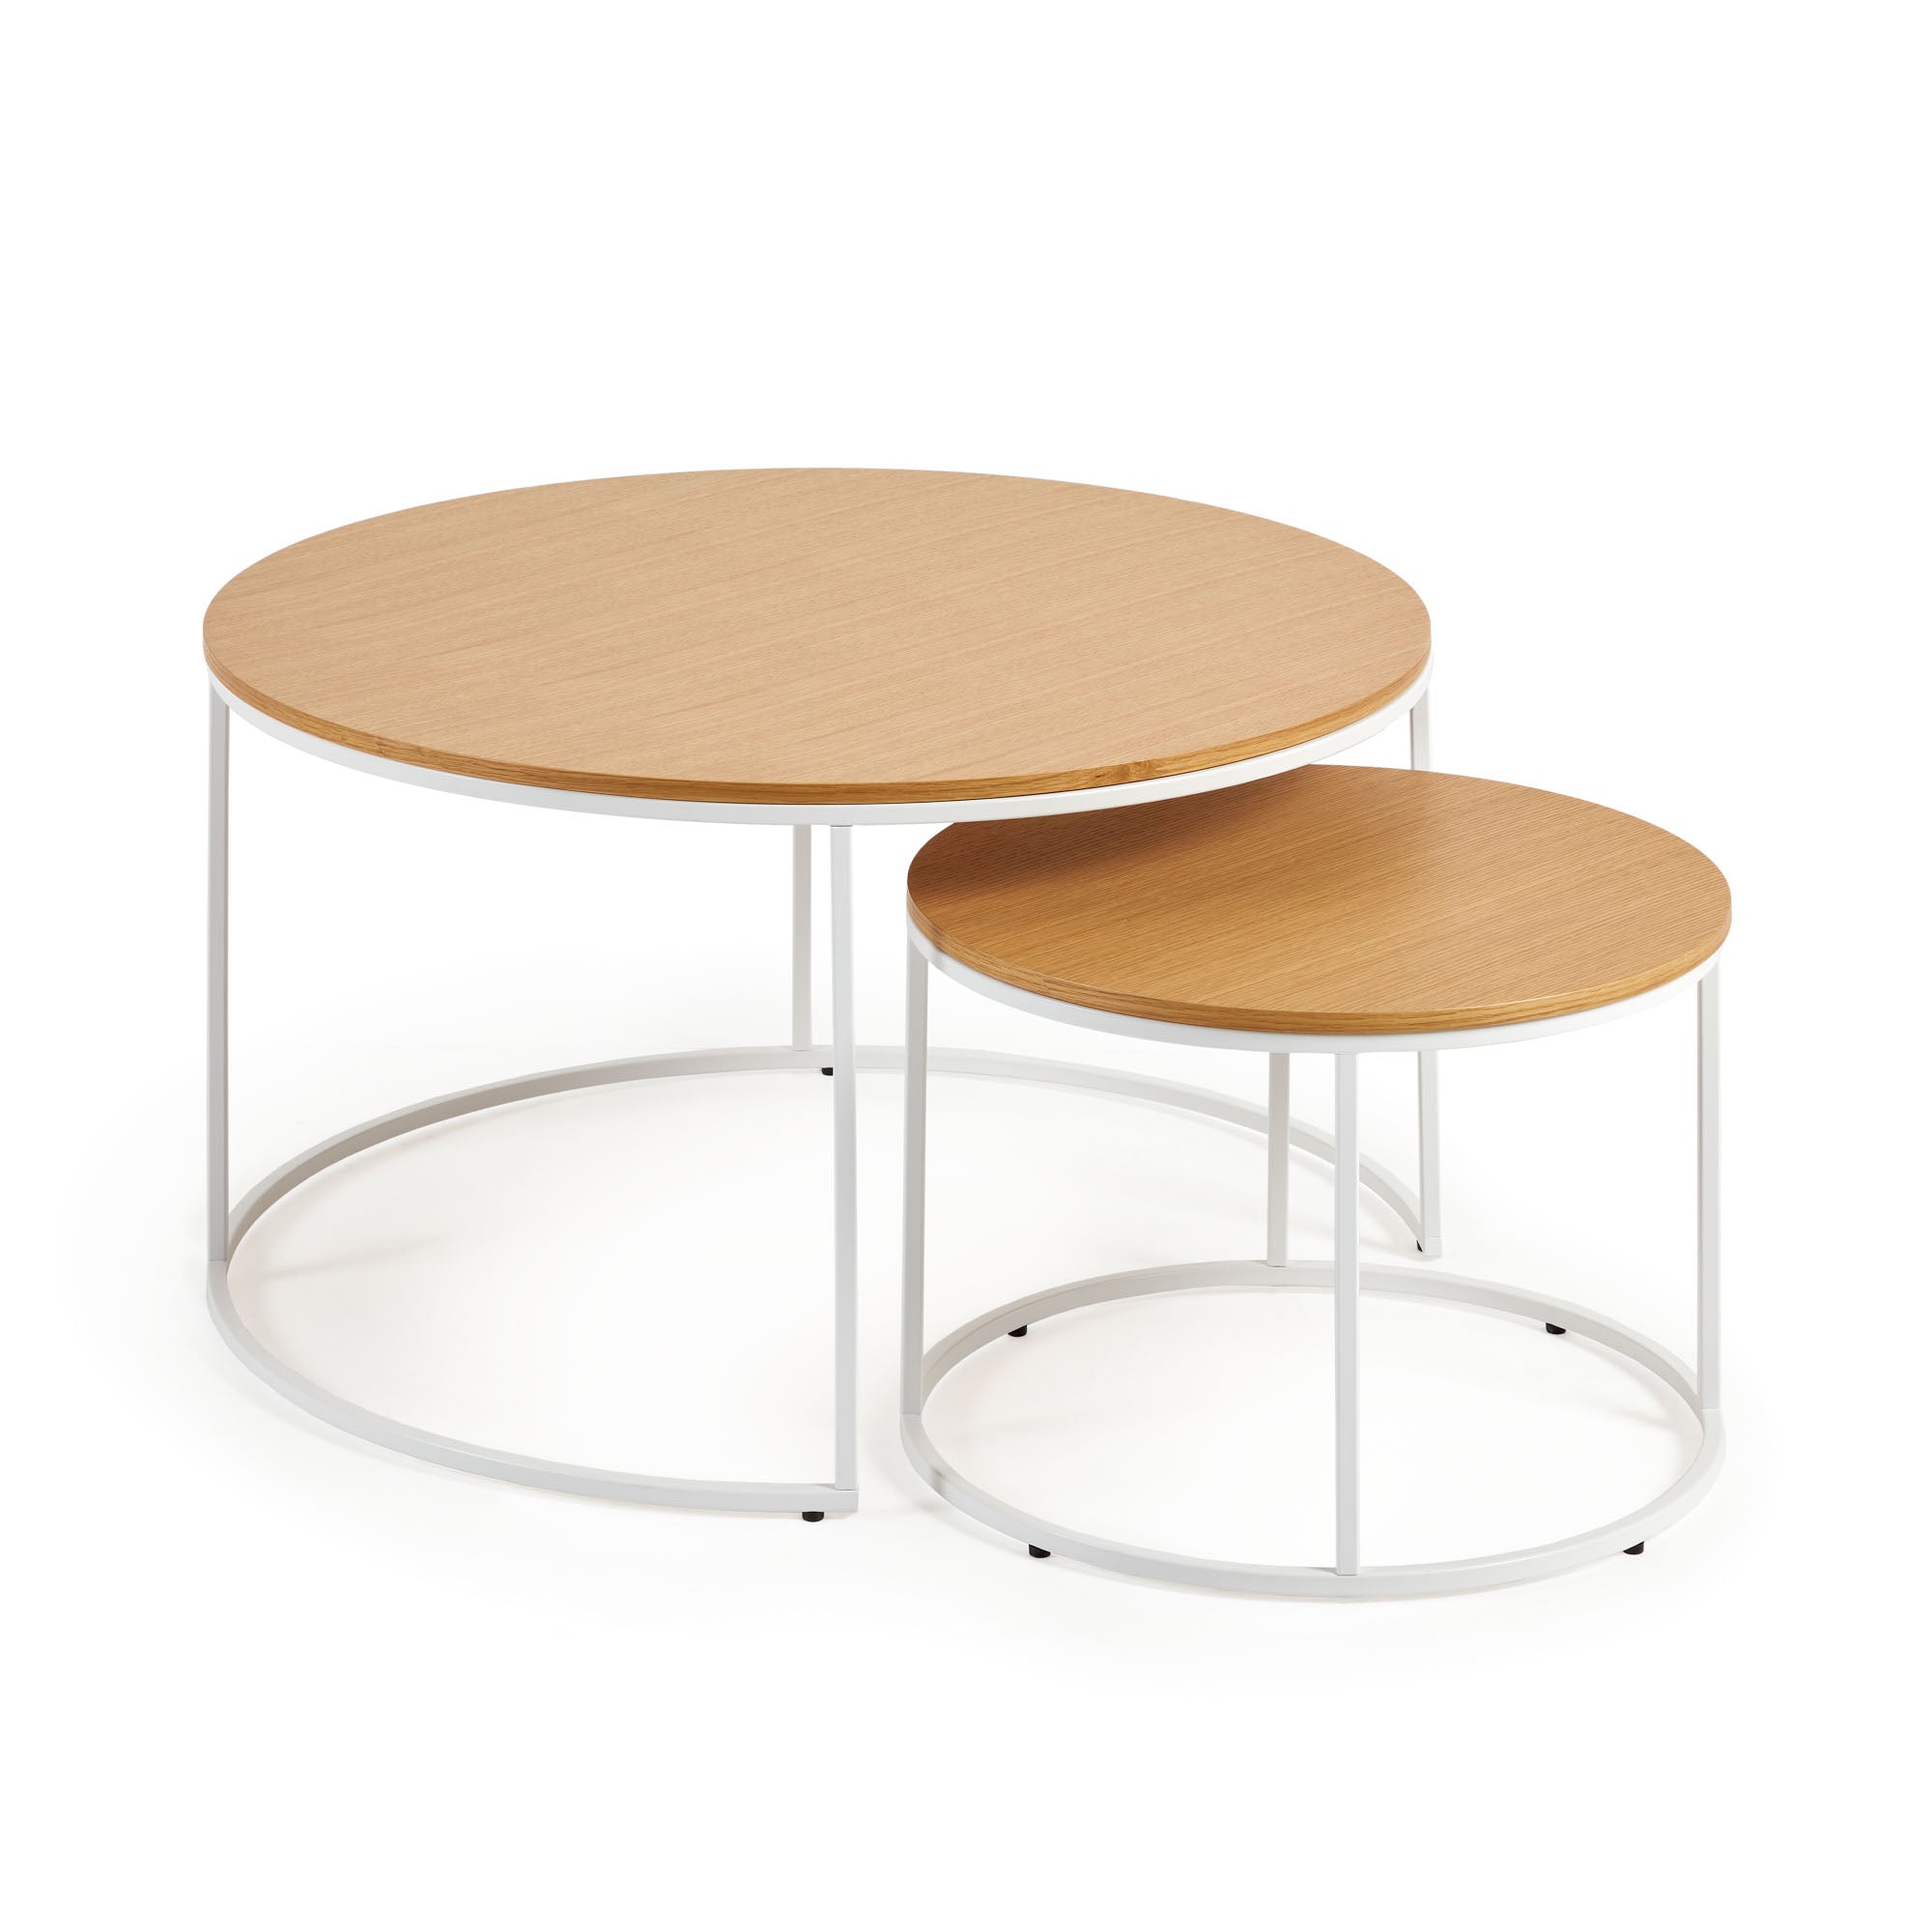 Yoana 2 db kisasztal, tölgyfa furnérral és fehér fémmel, Ø 80 cm / Ø 50 cm